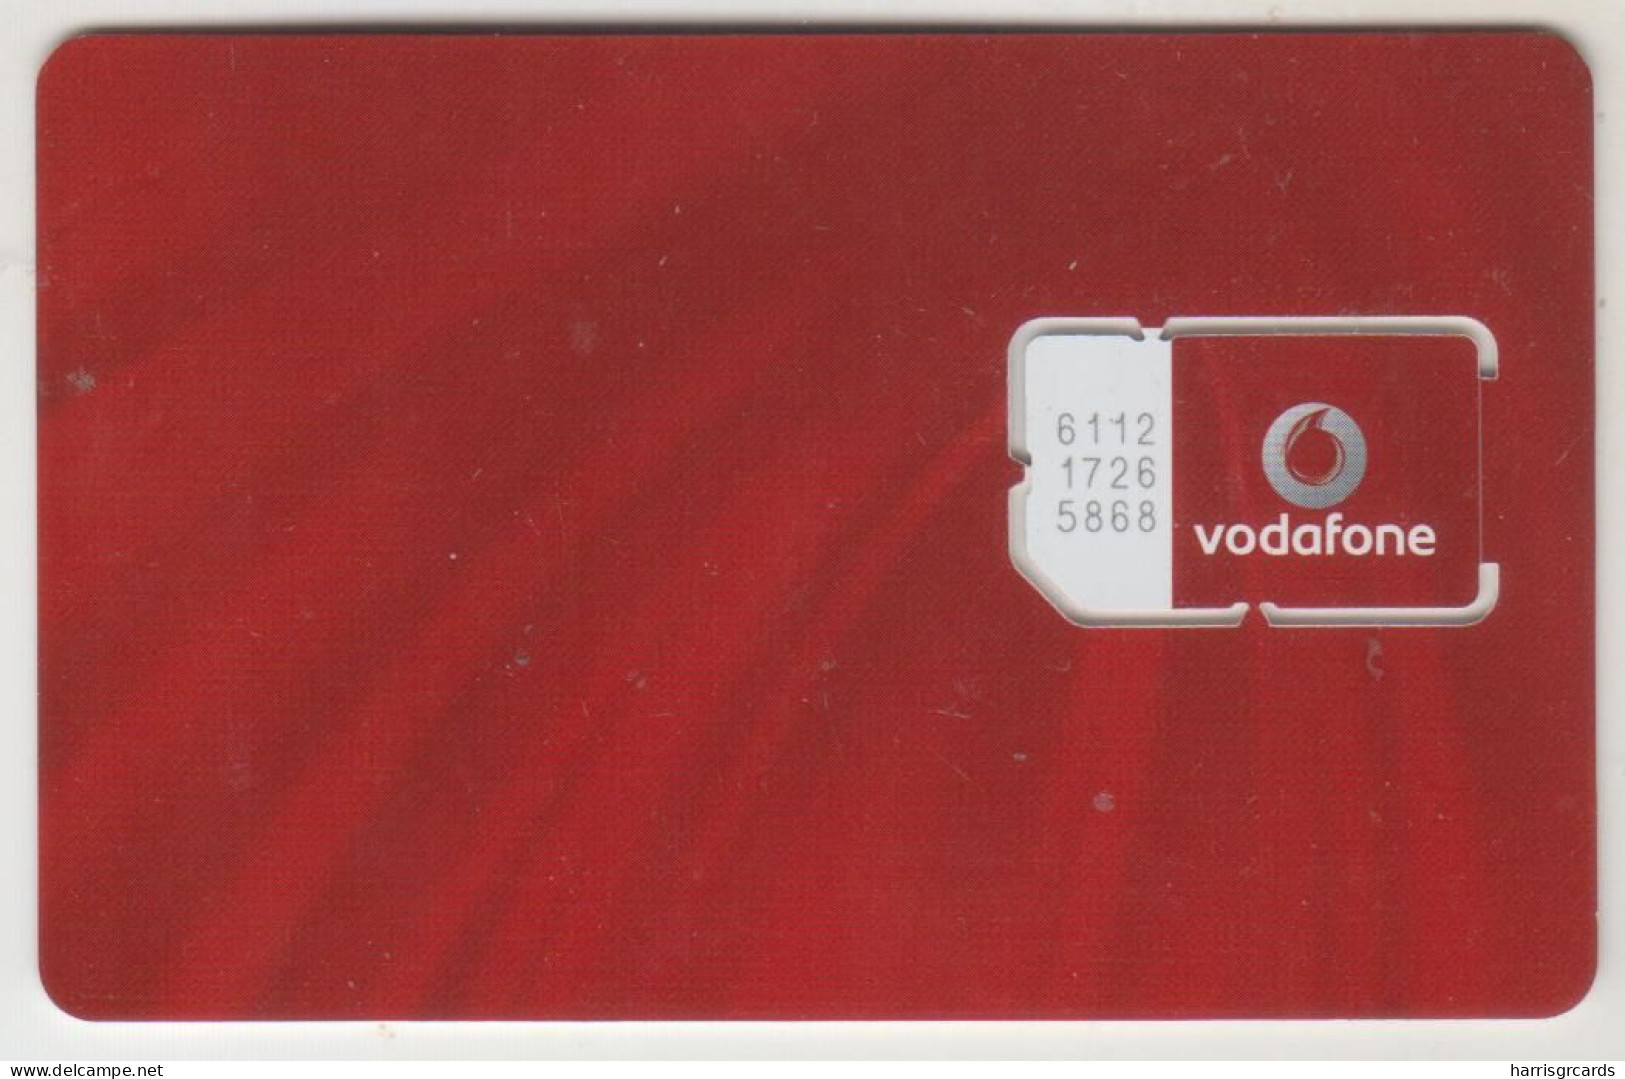 ROMANIA - Bun Venit, Vodafone GSM Card, Mint - Romania